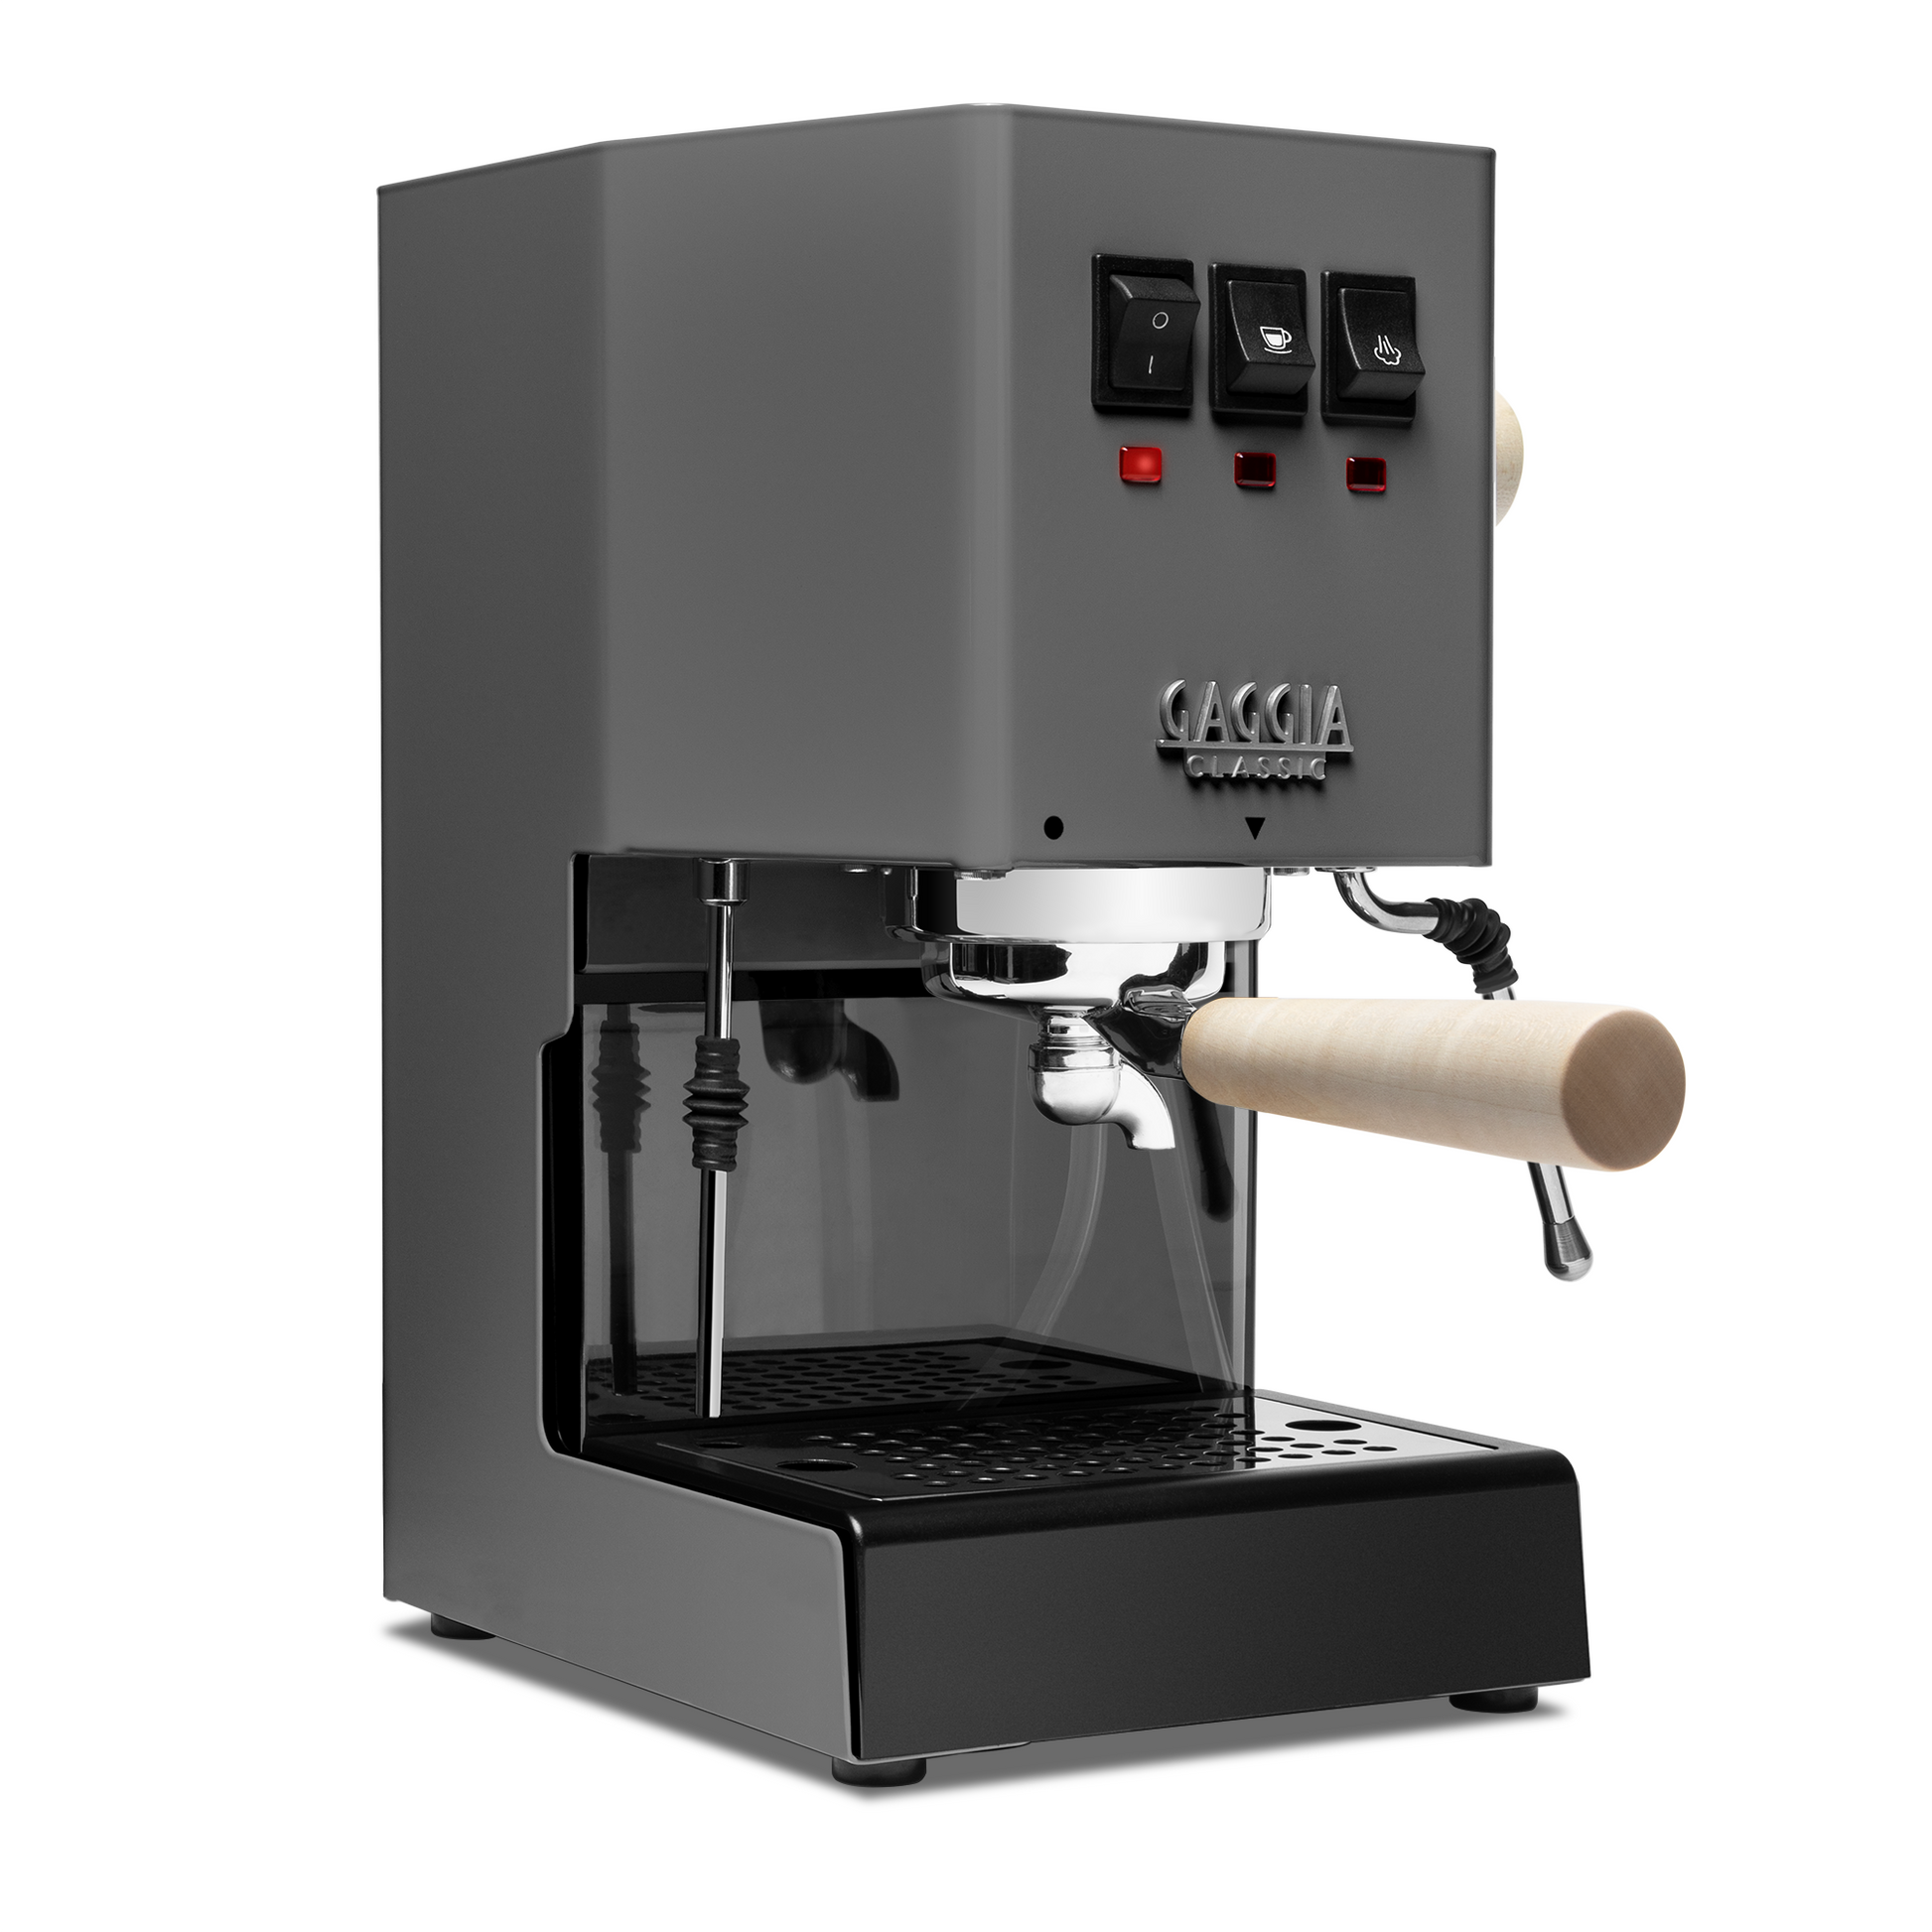 Gaggia Classic Evo Pro Espresso Machine in Industrial Grey with Tiger –  Whole Latte Love